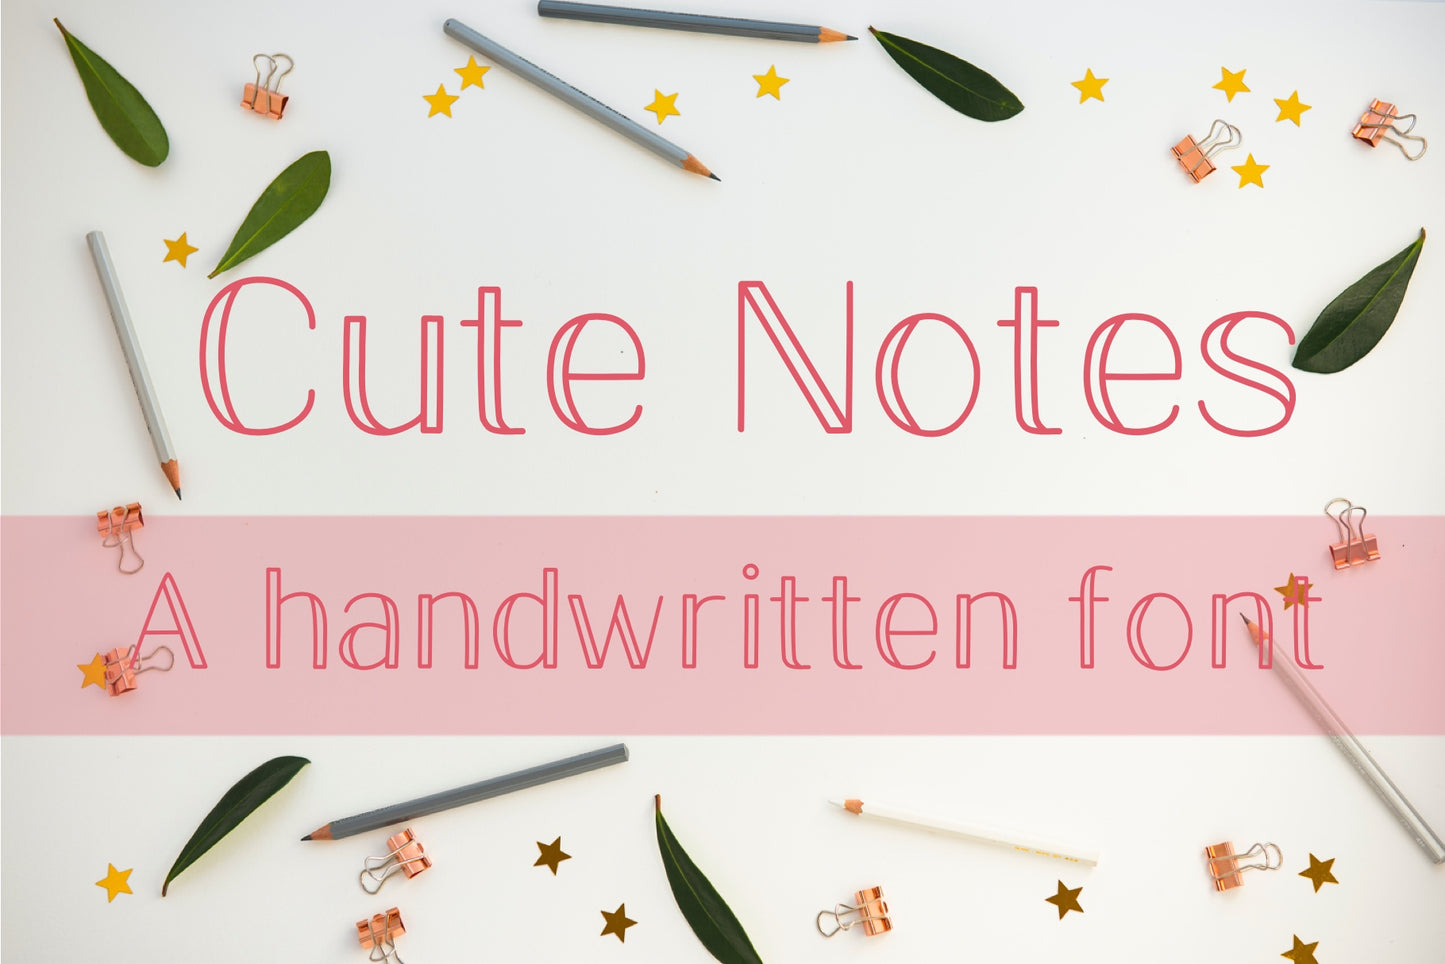 Handwritten Font - Cute Notes